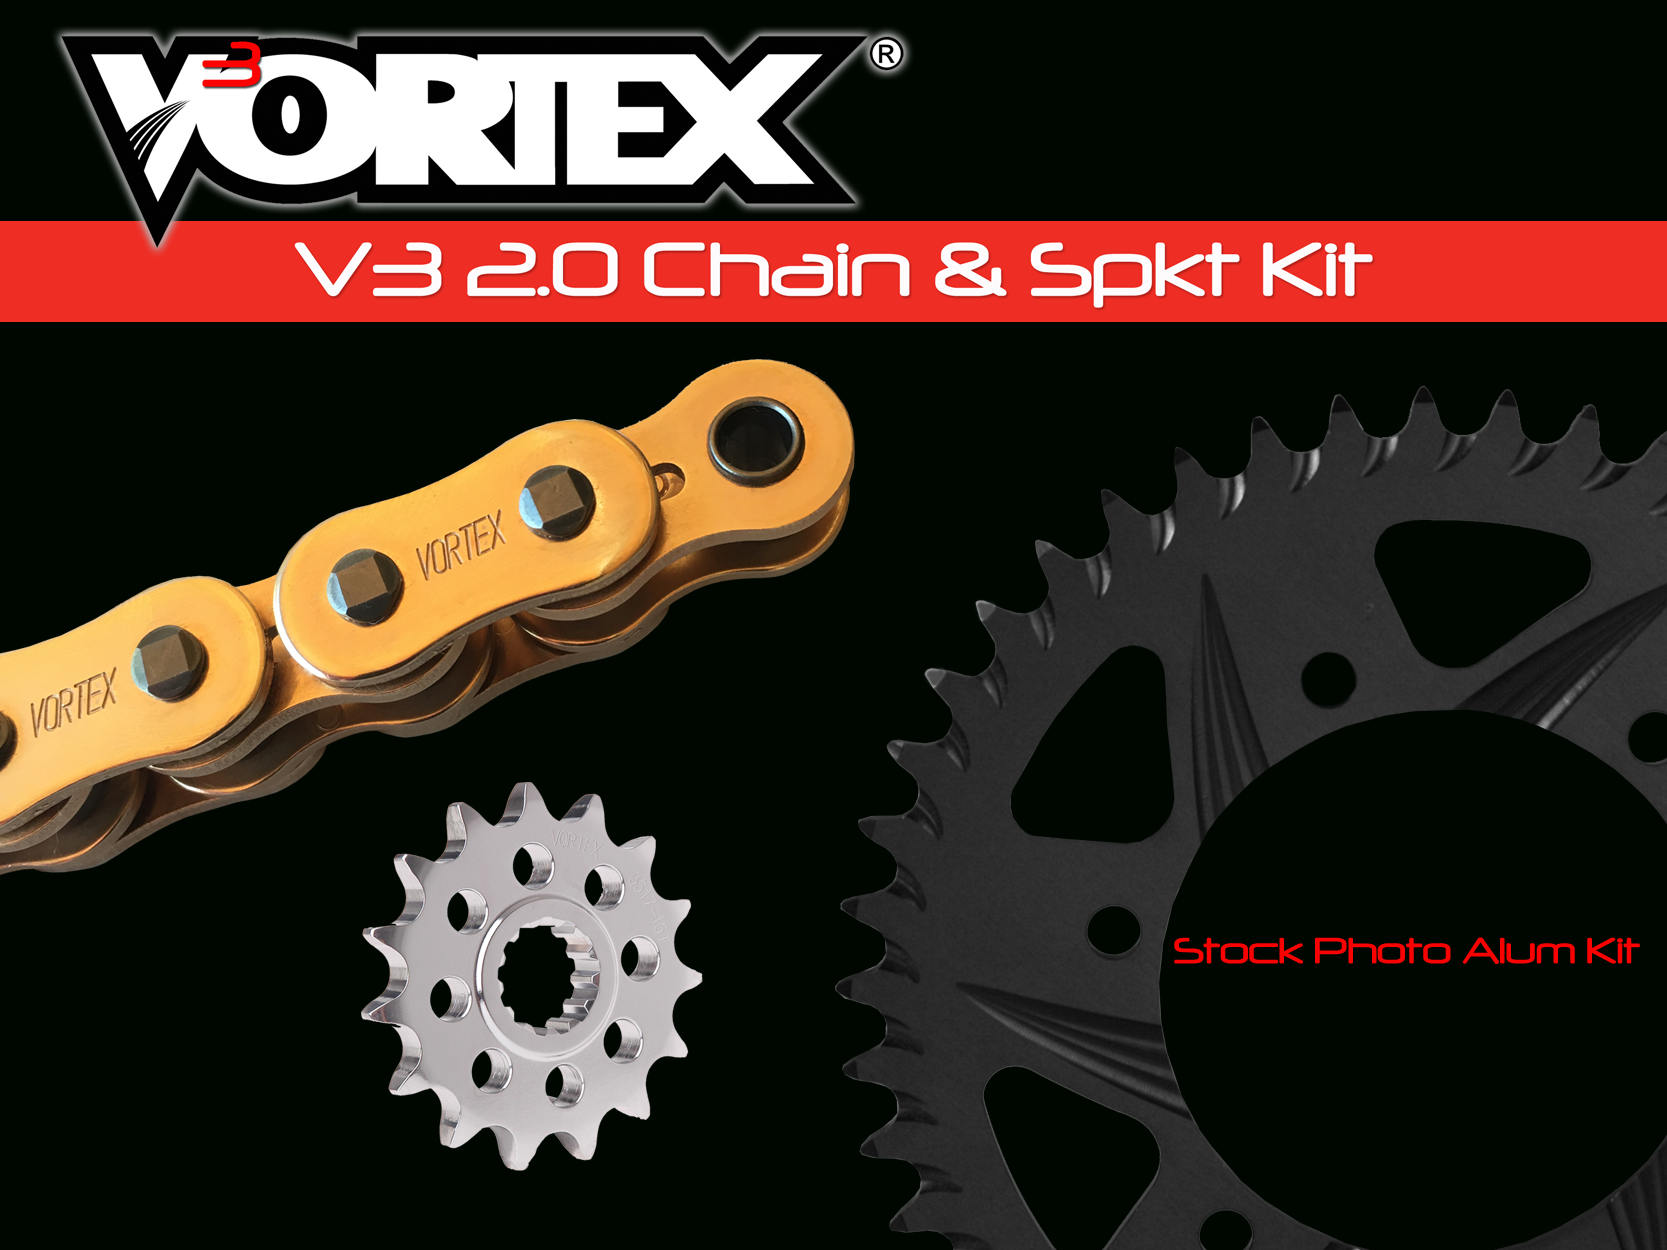 V3 2.0 Gold Chain Alum Kits – Vortex Racing